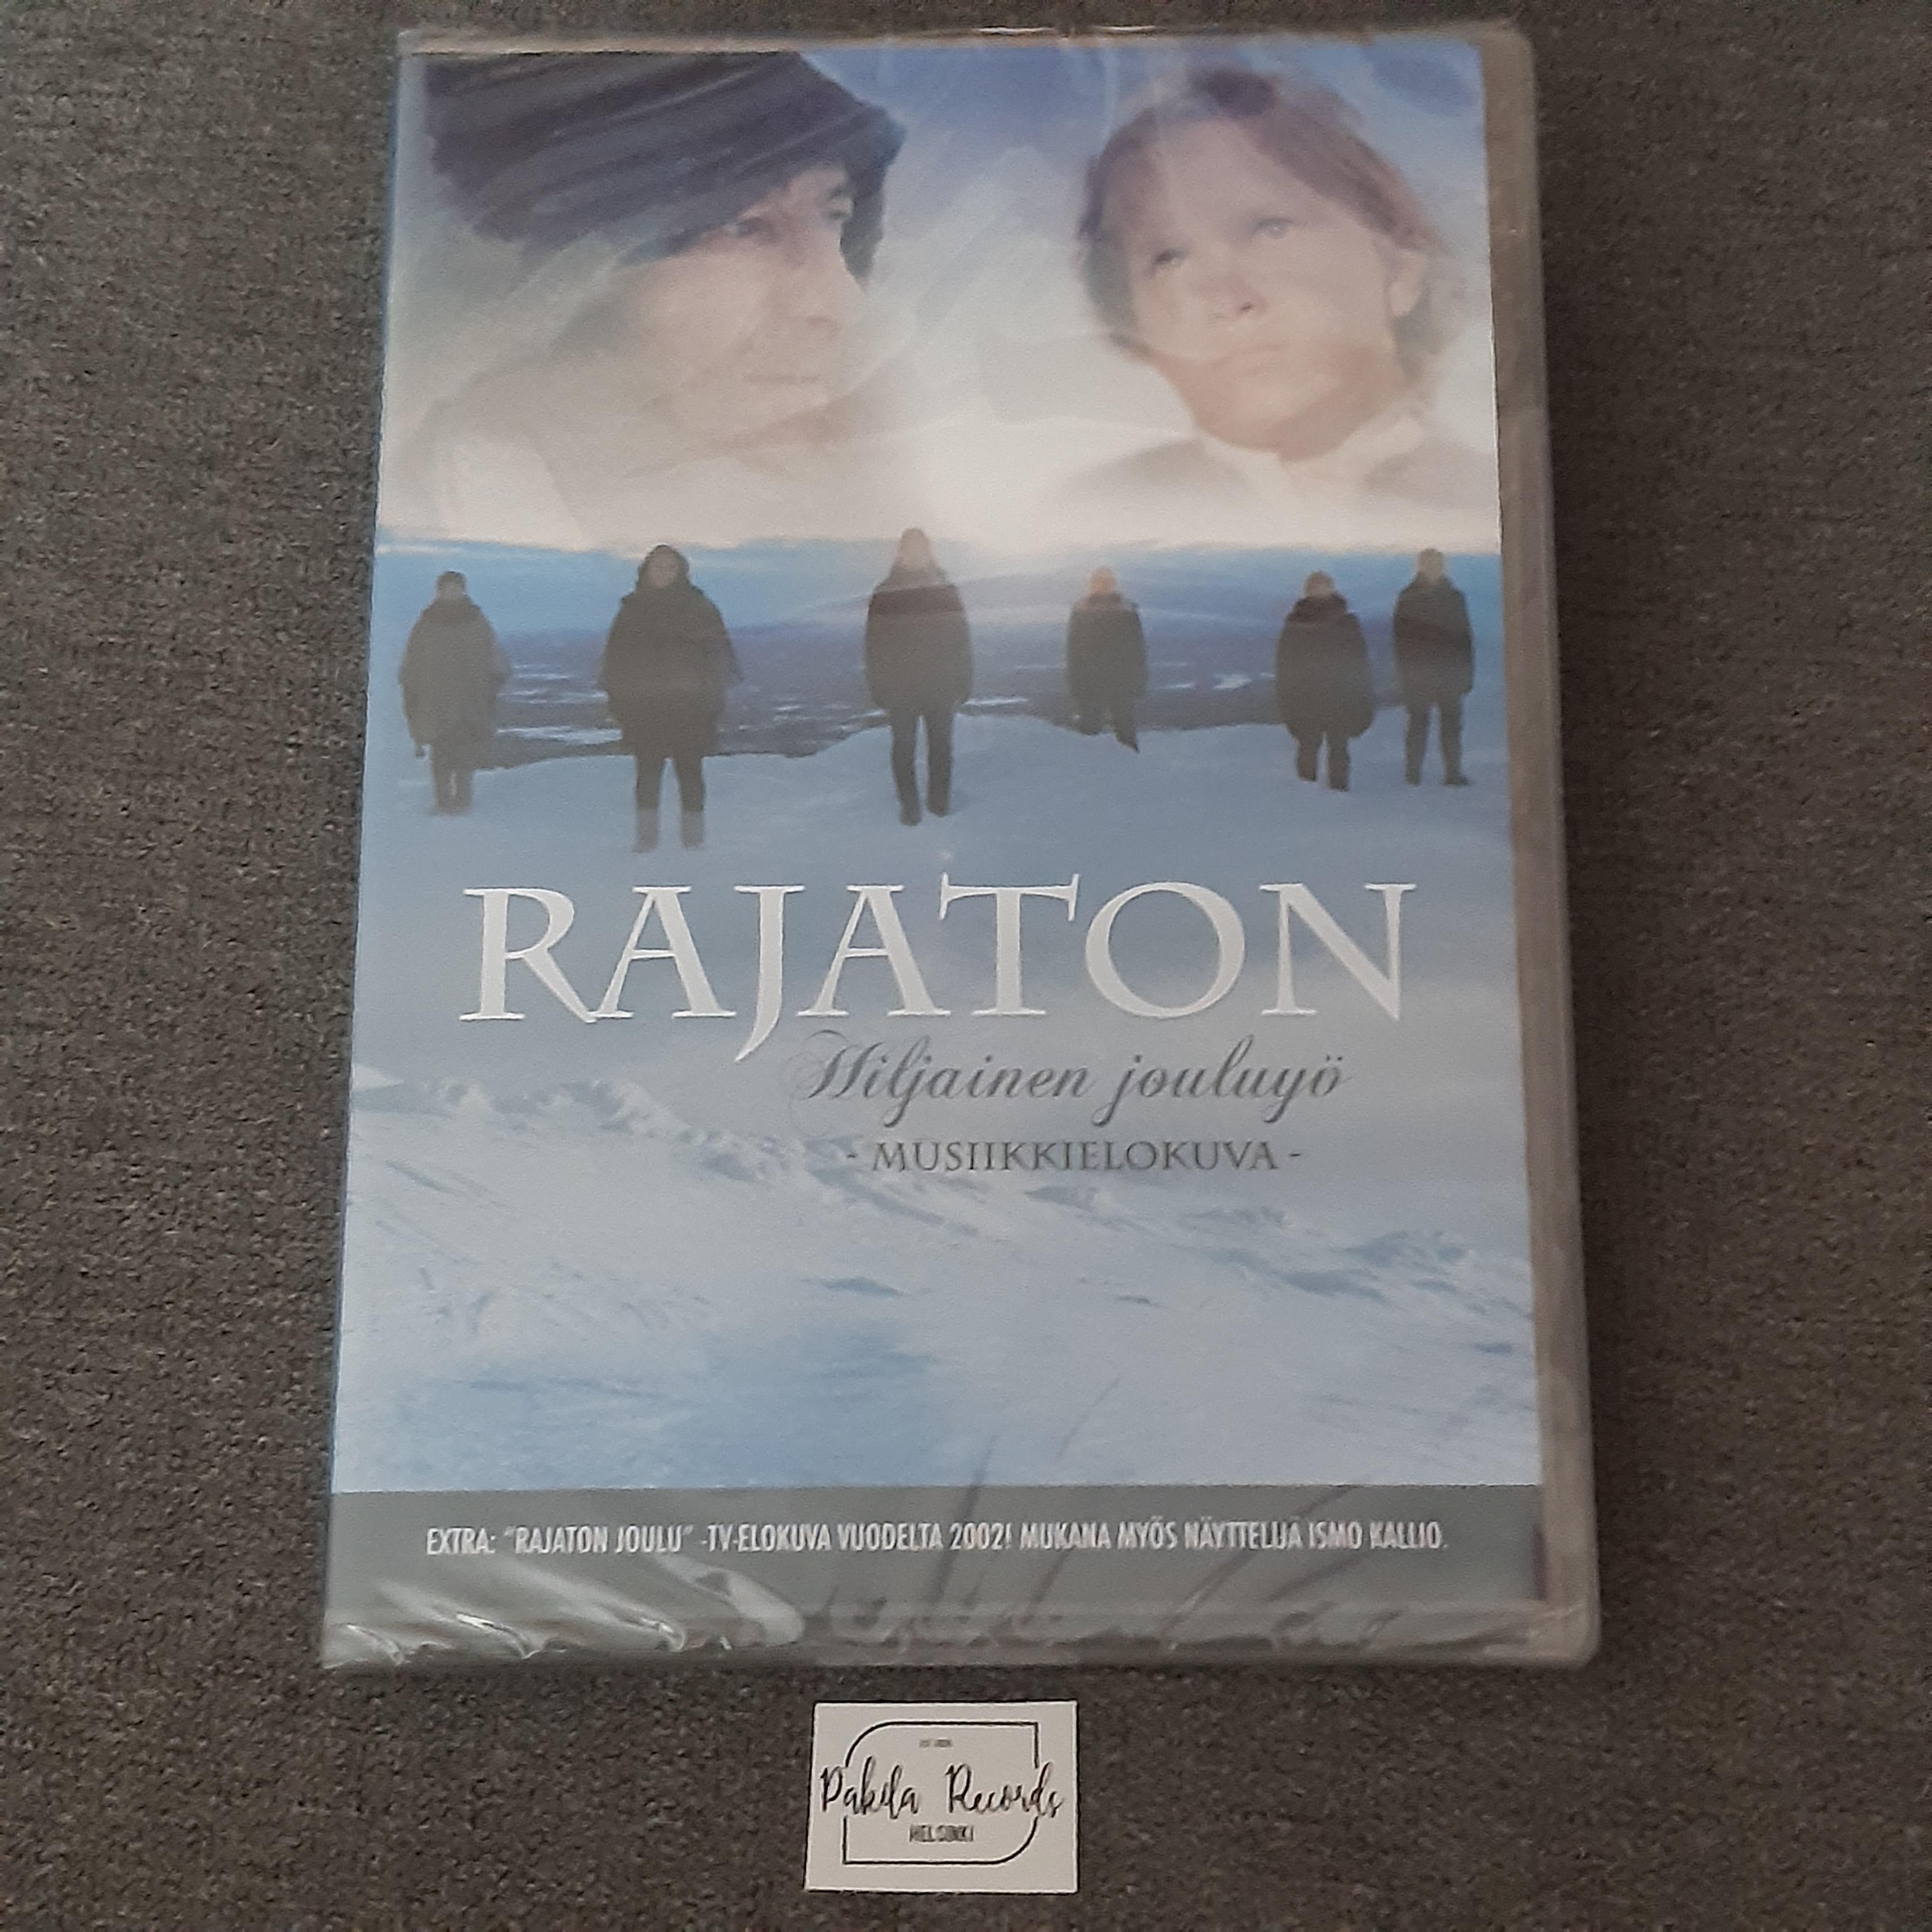 Rajaton - Hiljainen jouluyö, Musiikkielokuva - DVD (käytetty)